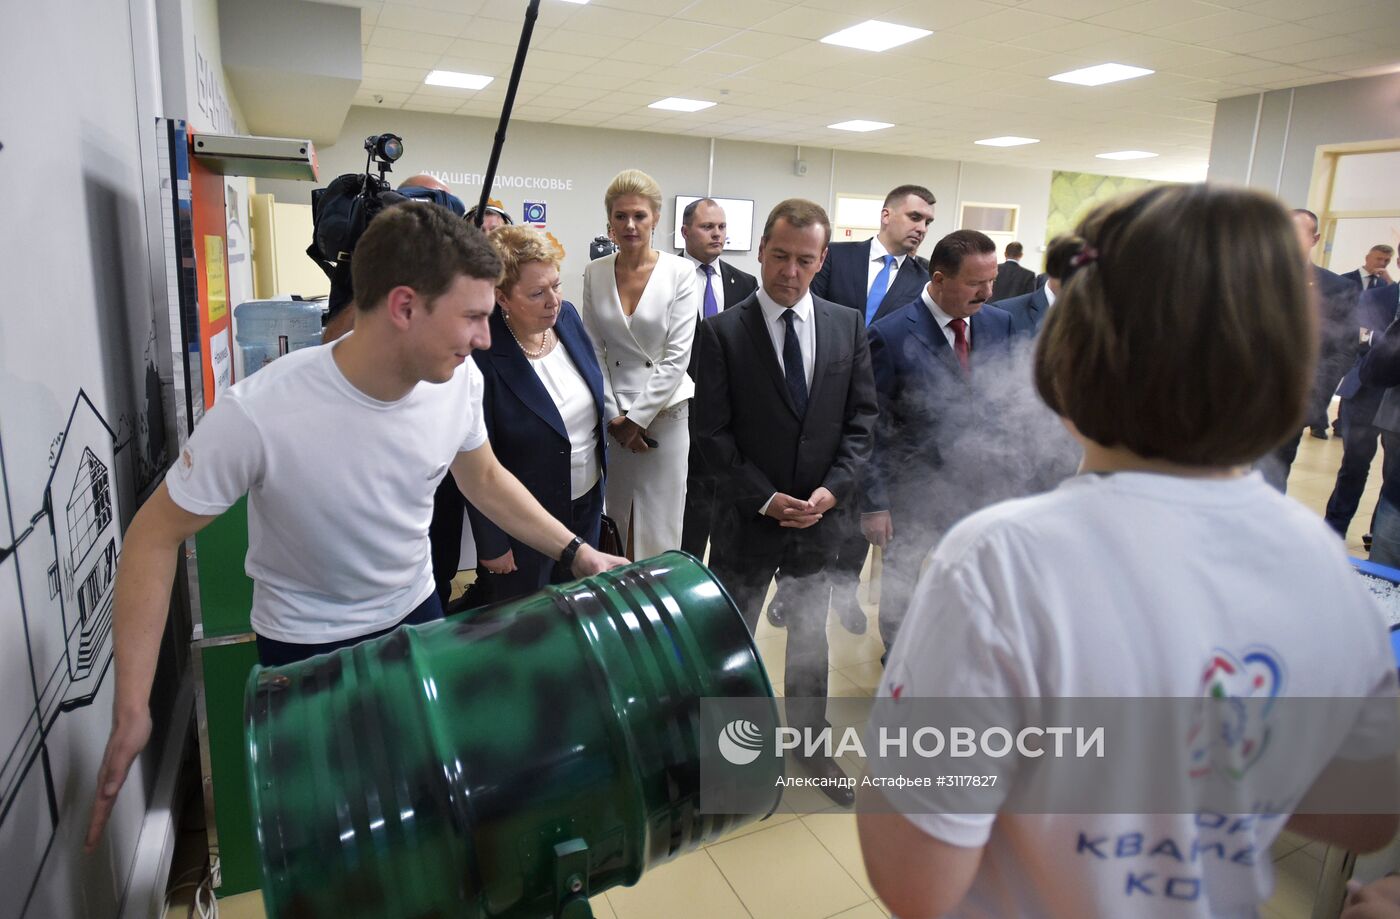 Премьер-министр РФ Д. Медведев посетил детский технопарк "Кванториум"